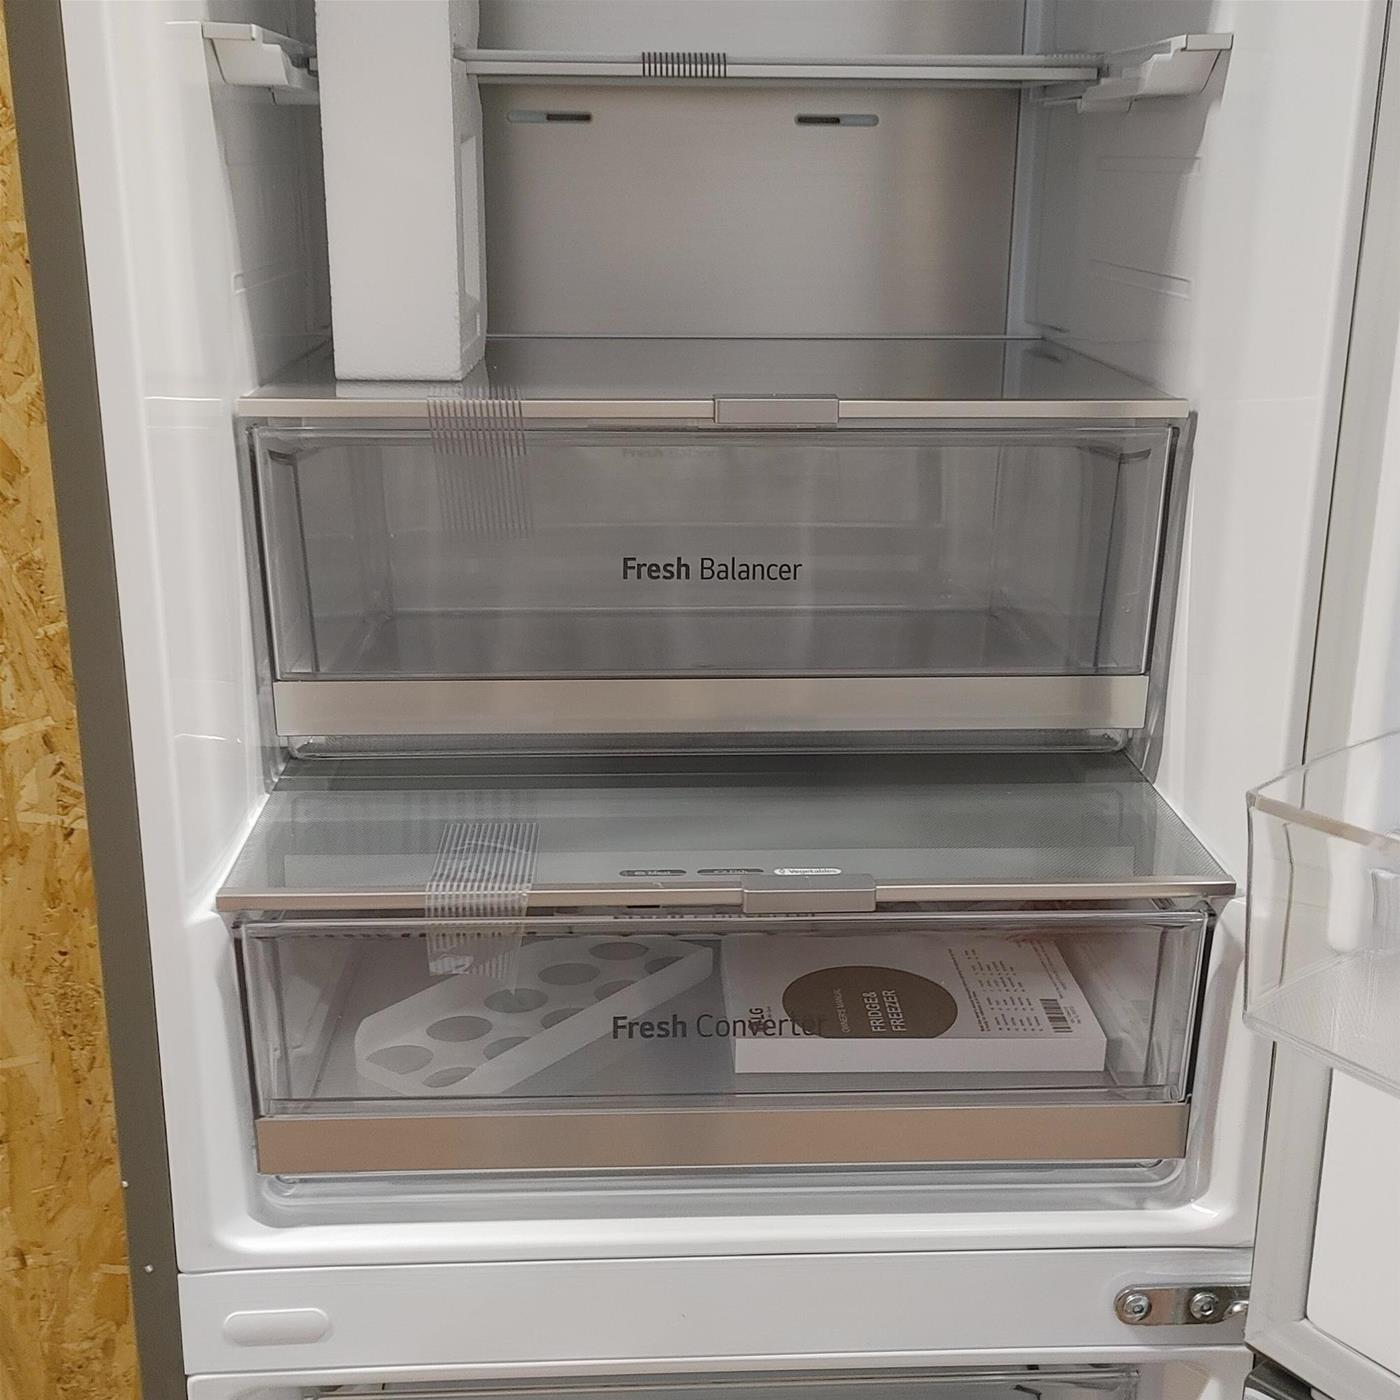 LG GBB72PZUGN.APZQEUR frigorifero con congelatore Libera installazione 384 L D Acciaio inossidabile